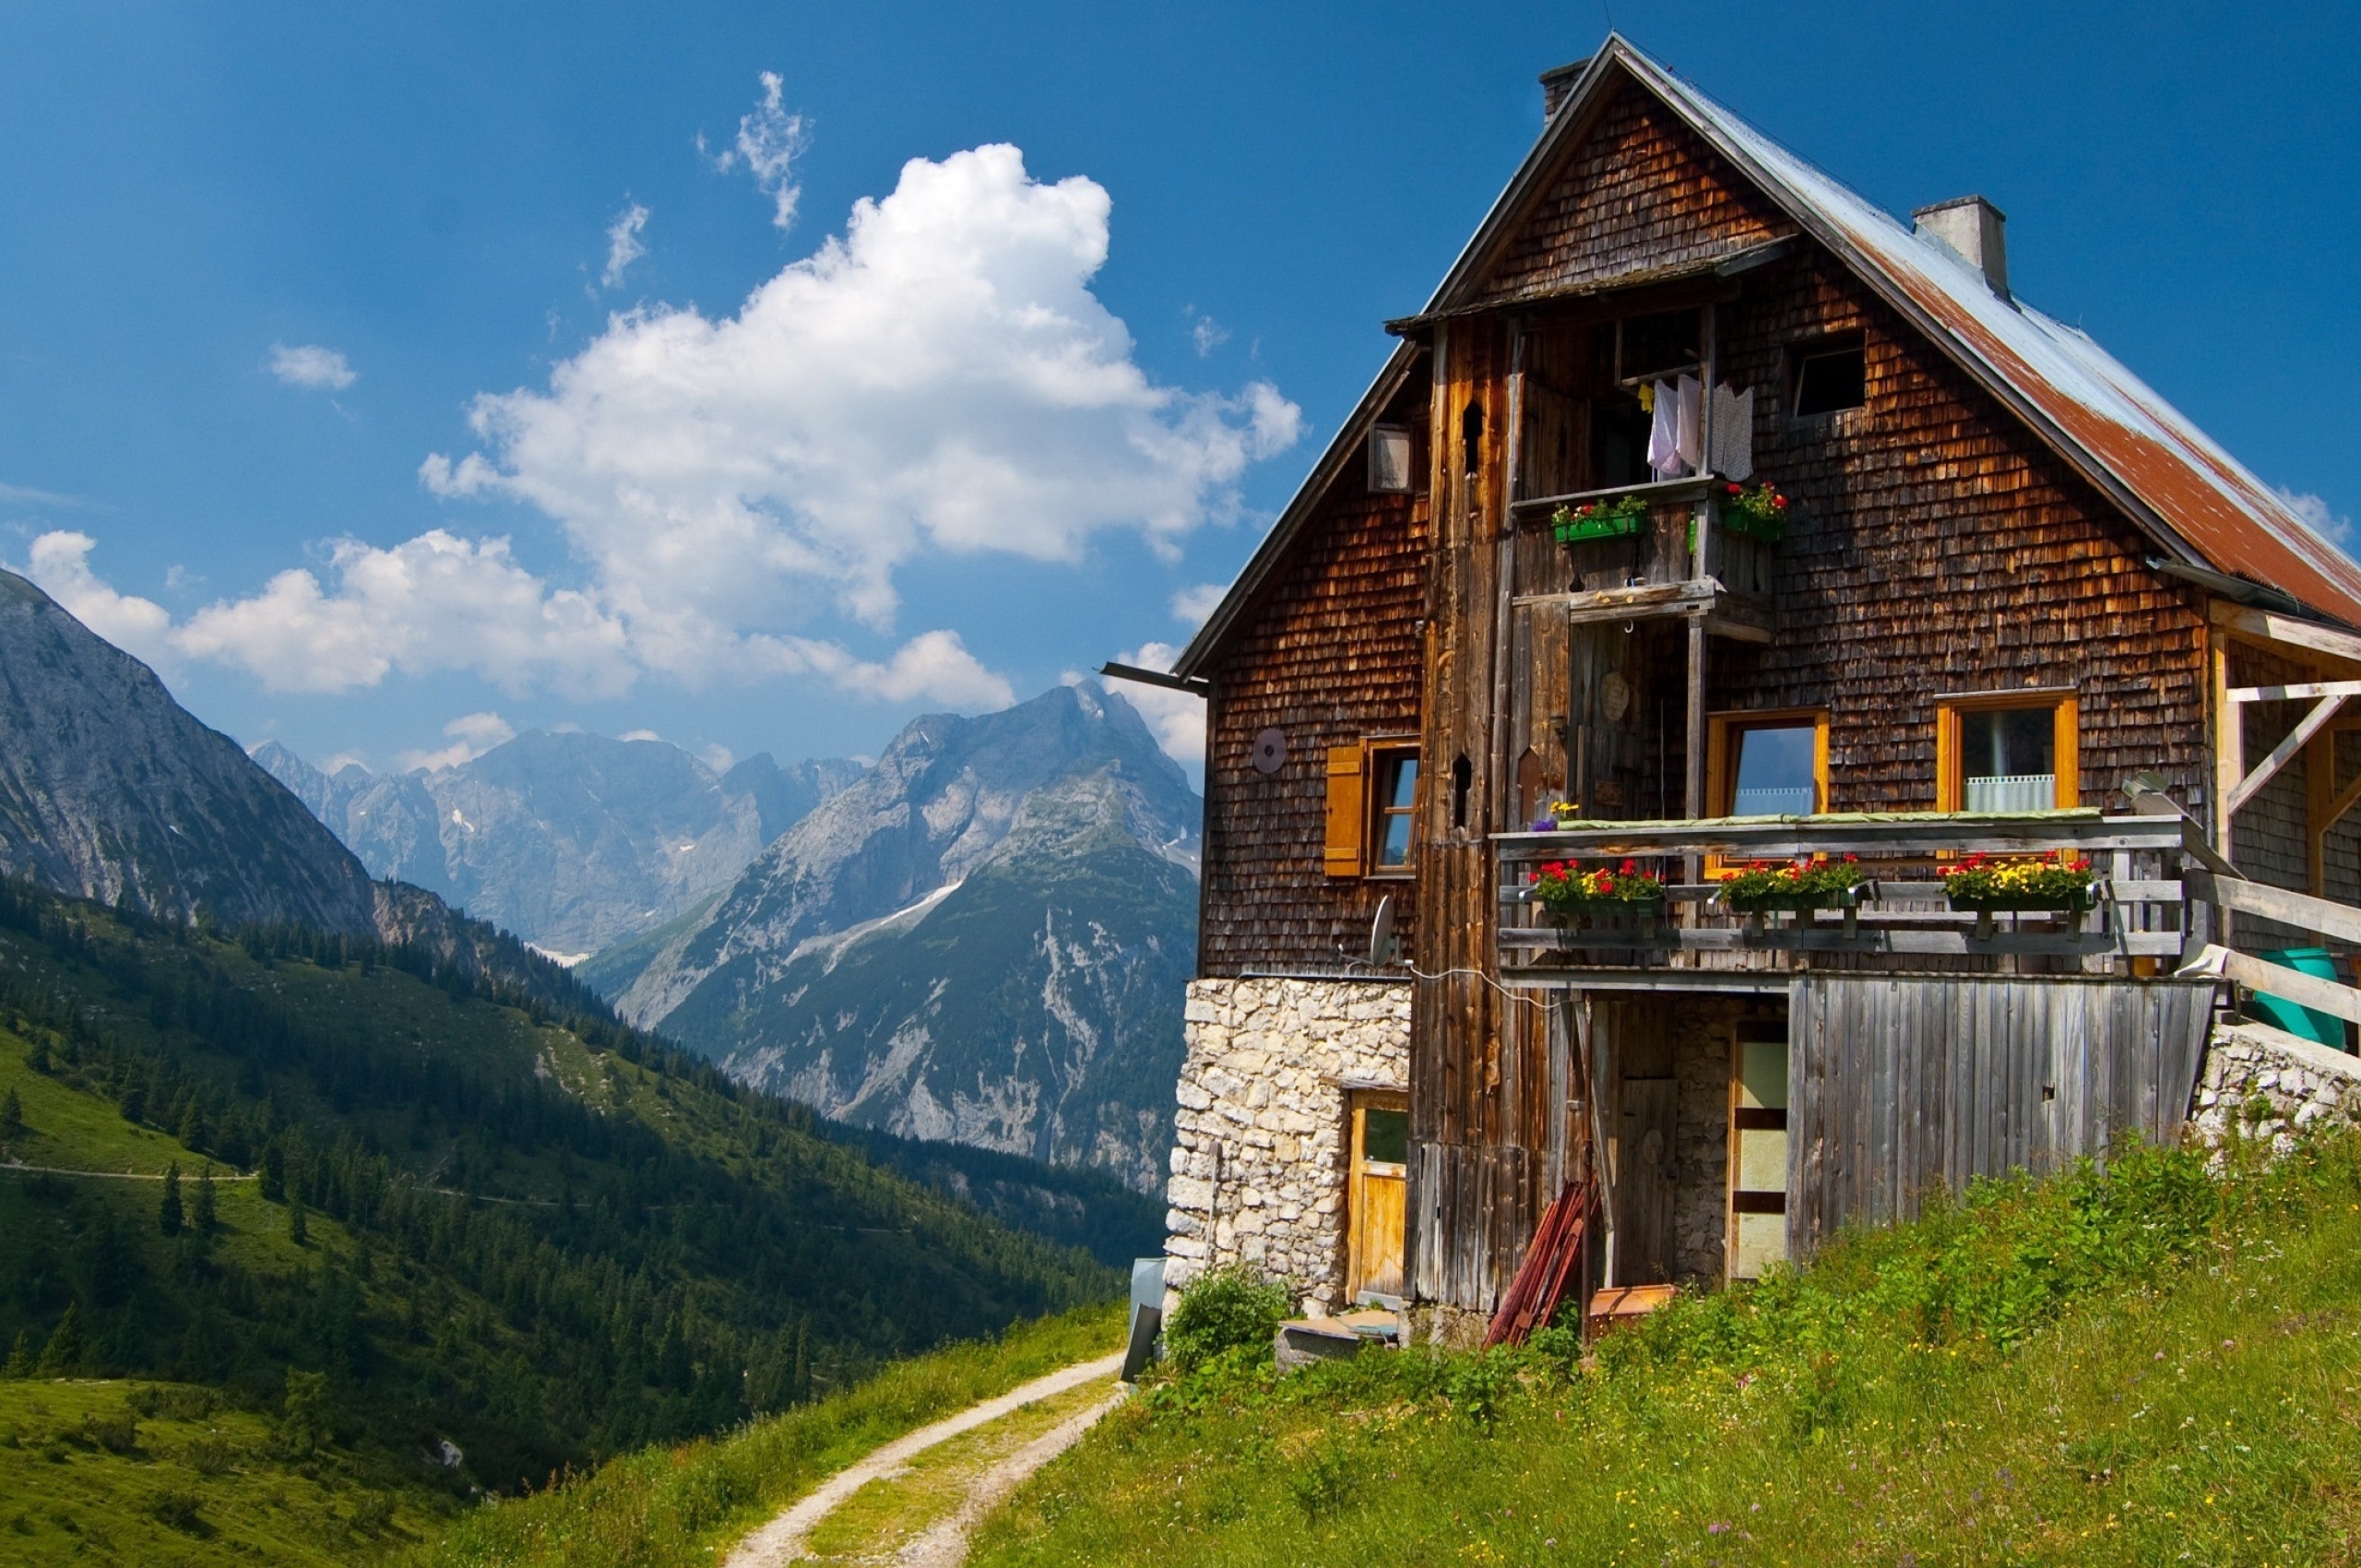 Весь город живет в одном доме. Долина Лаутербруннен Швейцария. Австрия Шале Альпы Тироль. Доломитовые Альпы Австрия Шале. Дом в Альпах Швейцария.